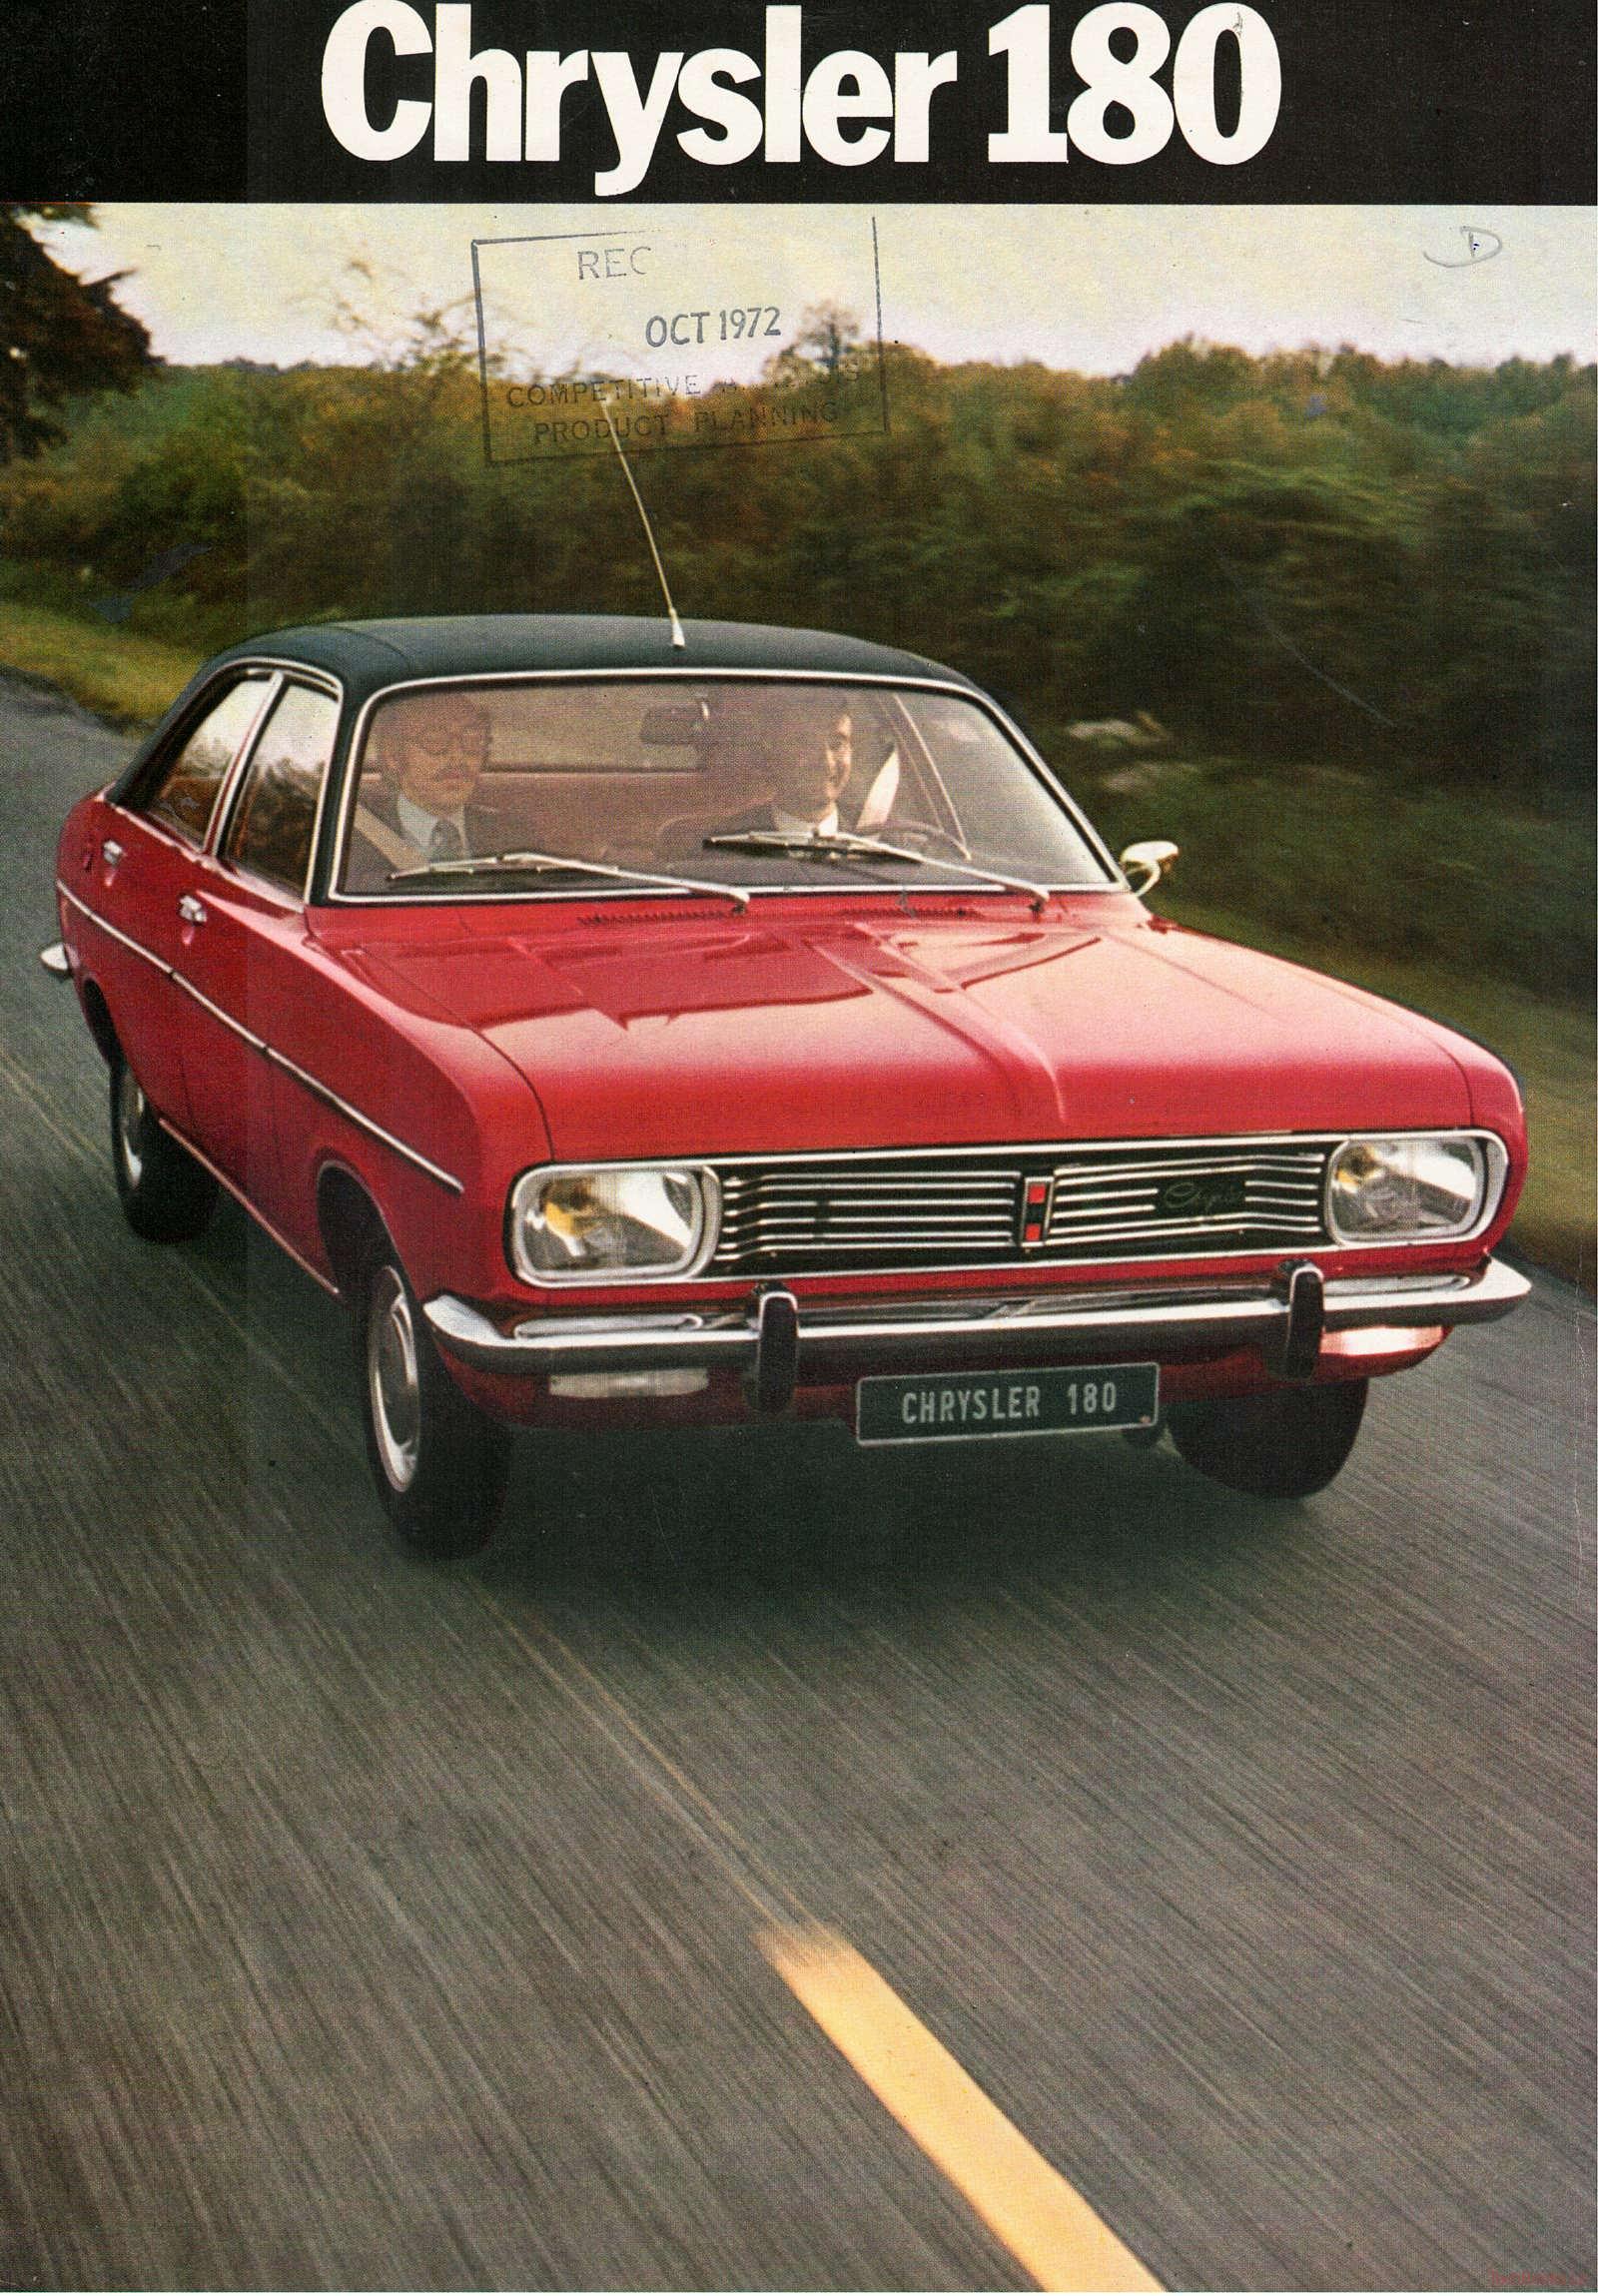 Chrysler 180 1973 (Prospekt)